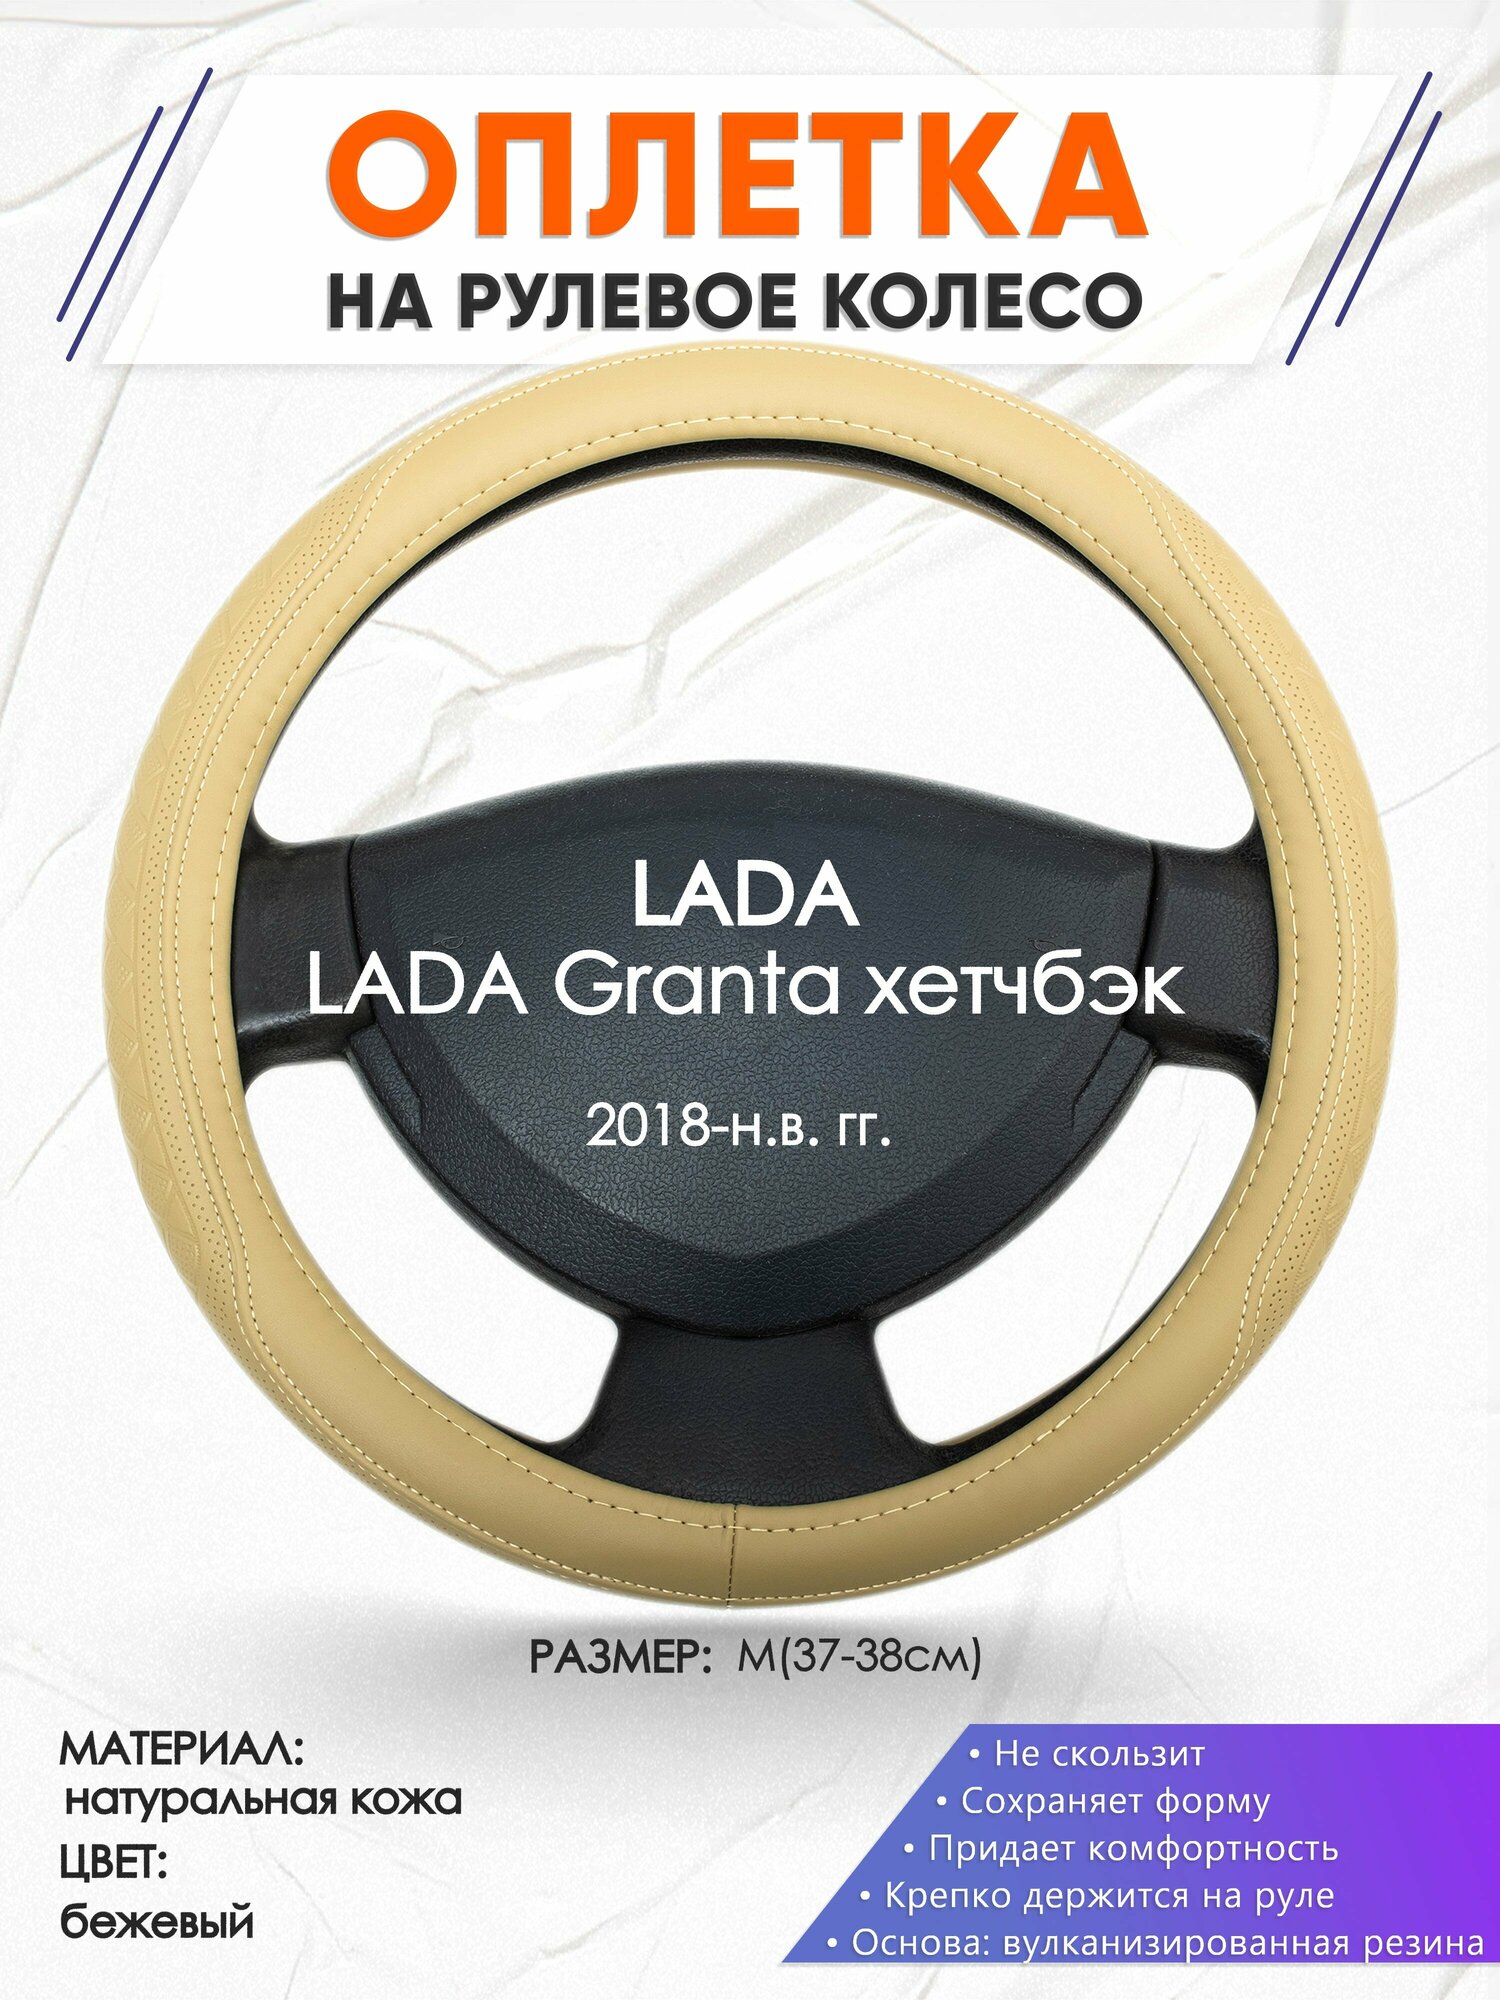 Оплетка наруль для LADA Granta хетчбэк(Лада Гранта) 2018-н. в. годов выпуска, размер M(37-38см), Натуральная кожа 91